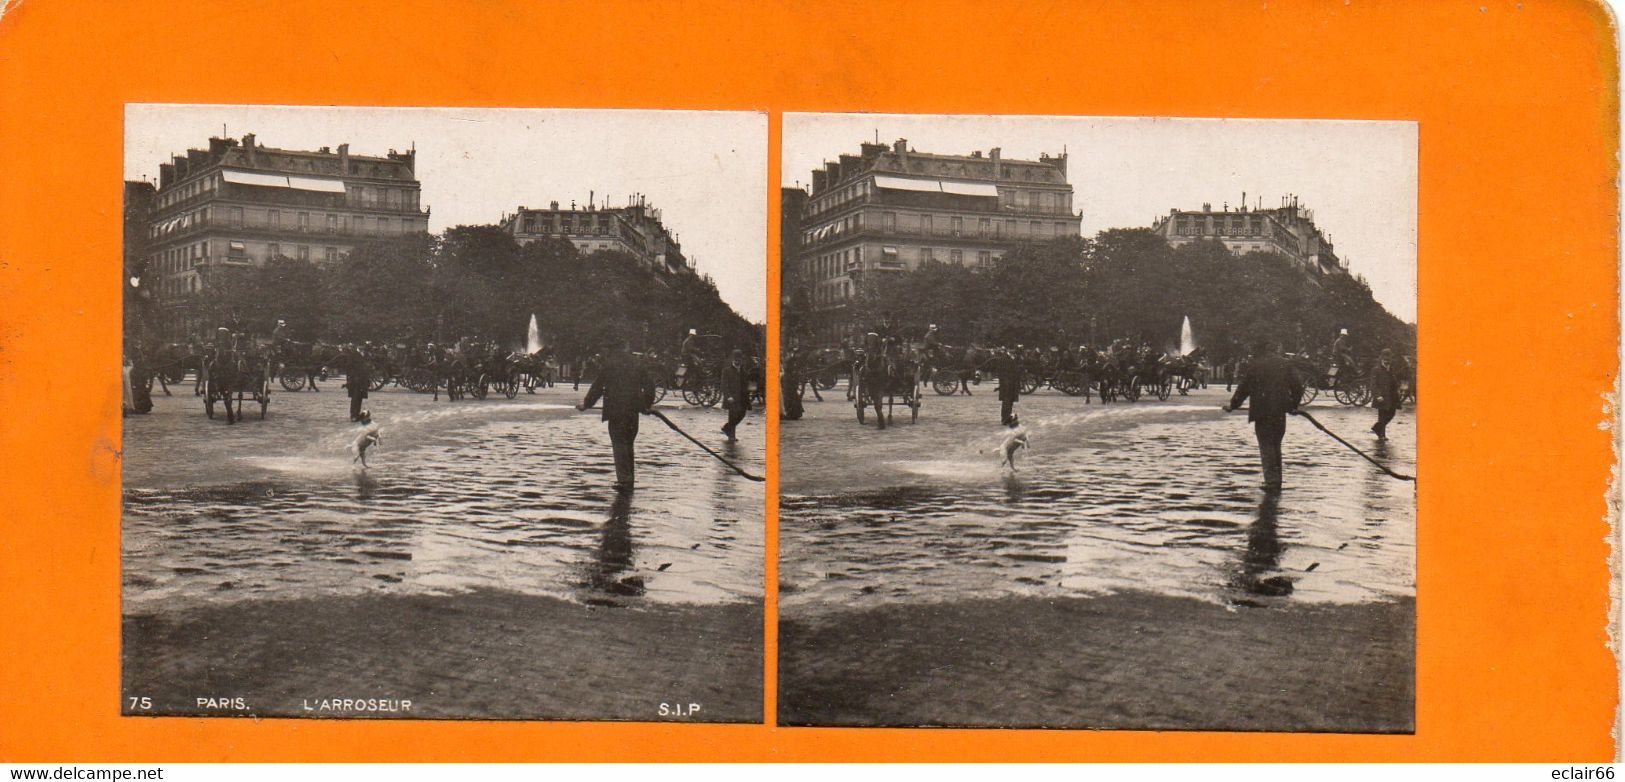 PHOTO STÉRÉOSCOPIQUE -Paris, Métiers L'arroseur,année 1920  Collection ANIMATION  N° 75 S.I.P - Stereoscopio